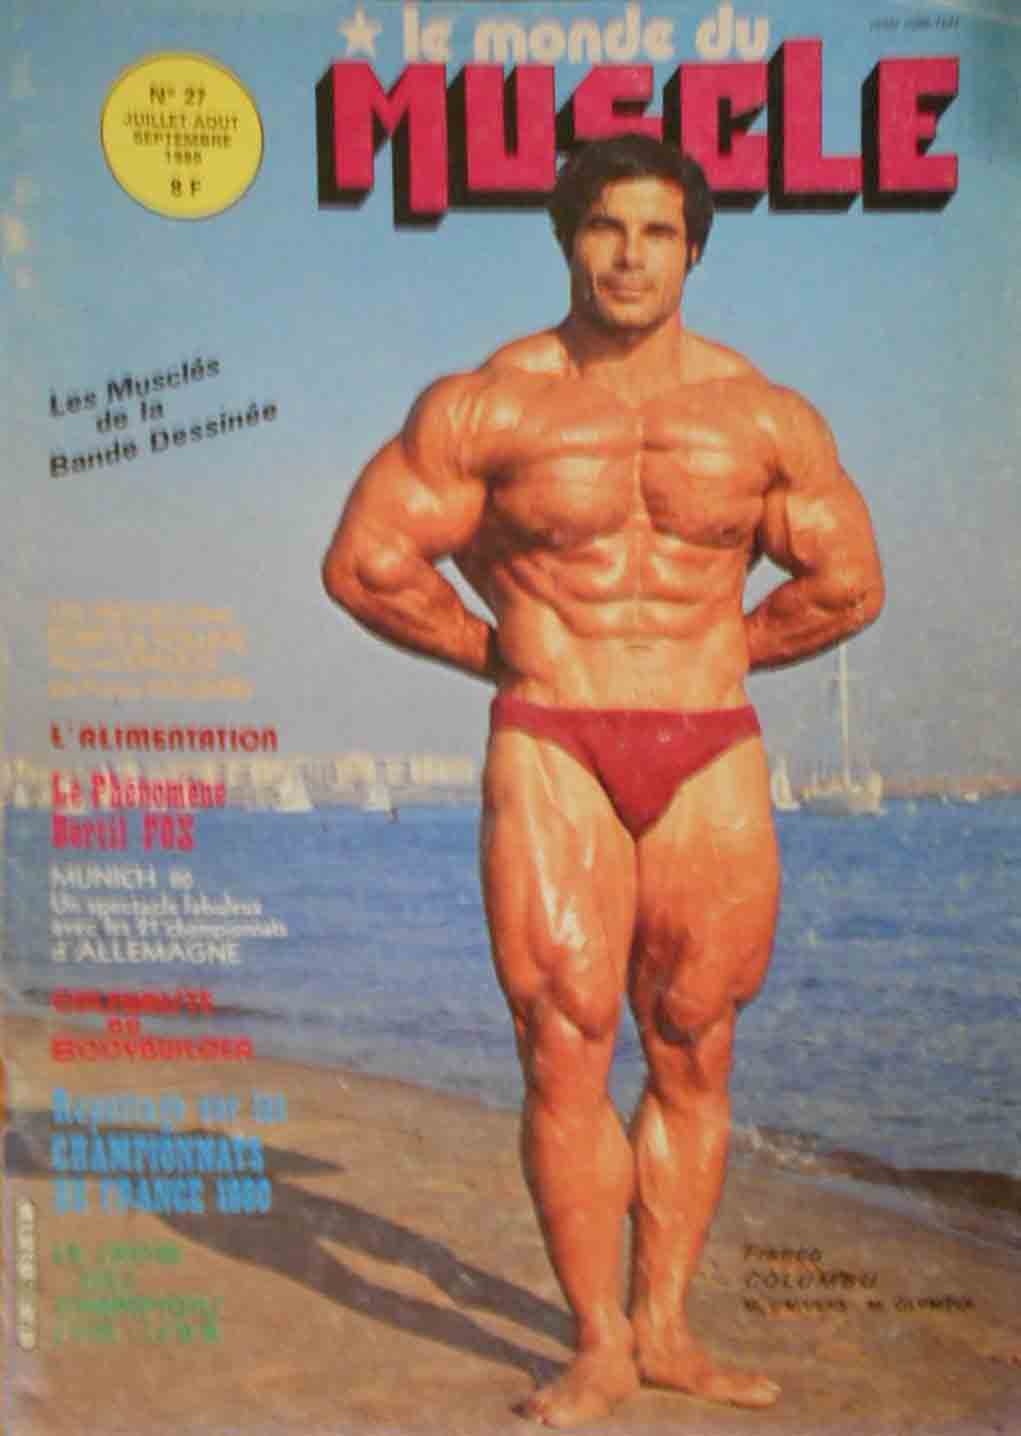 Le Monde du Muscle # 27 magazine back issue Le Monde du Muscle magizine back copy 